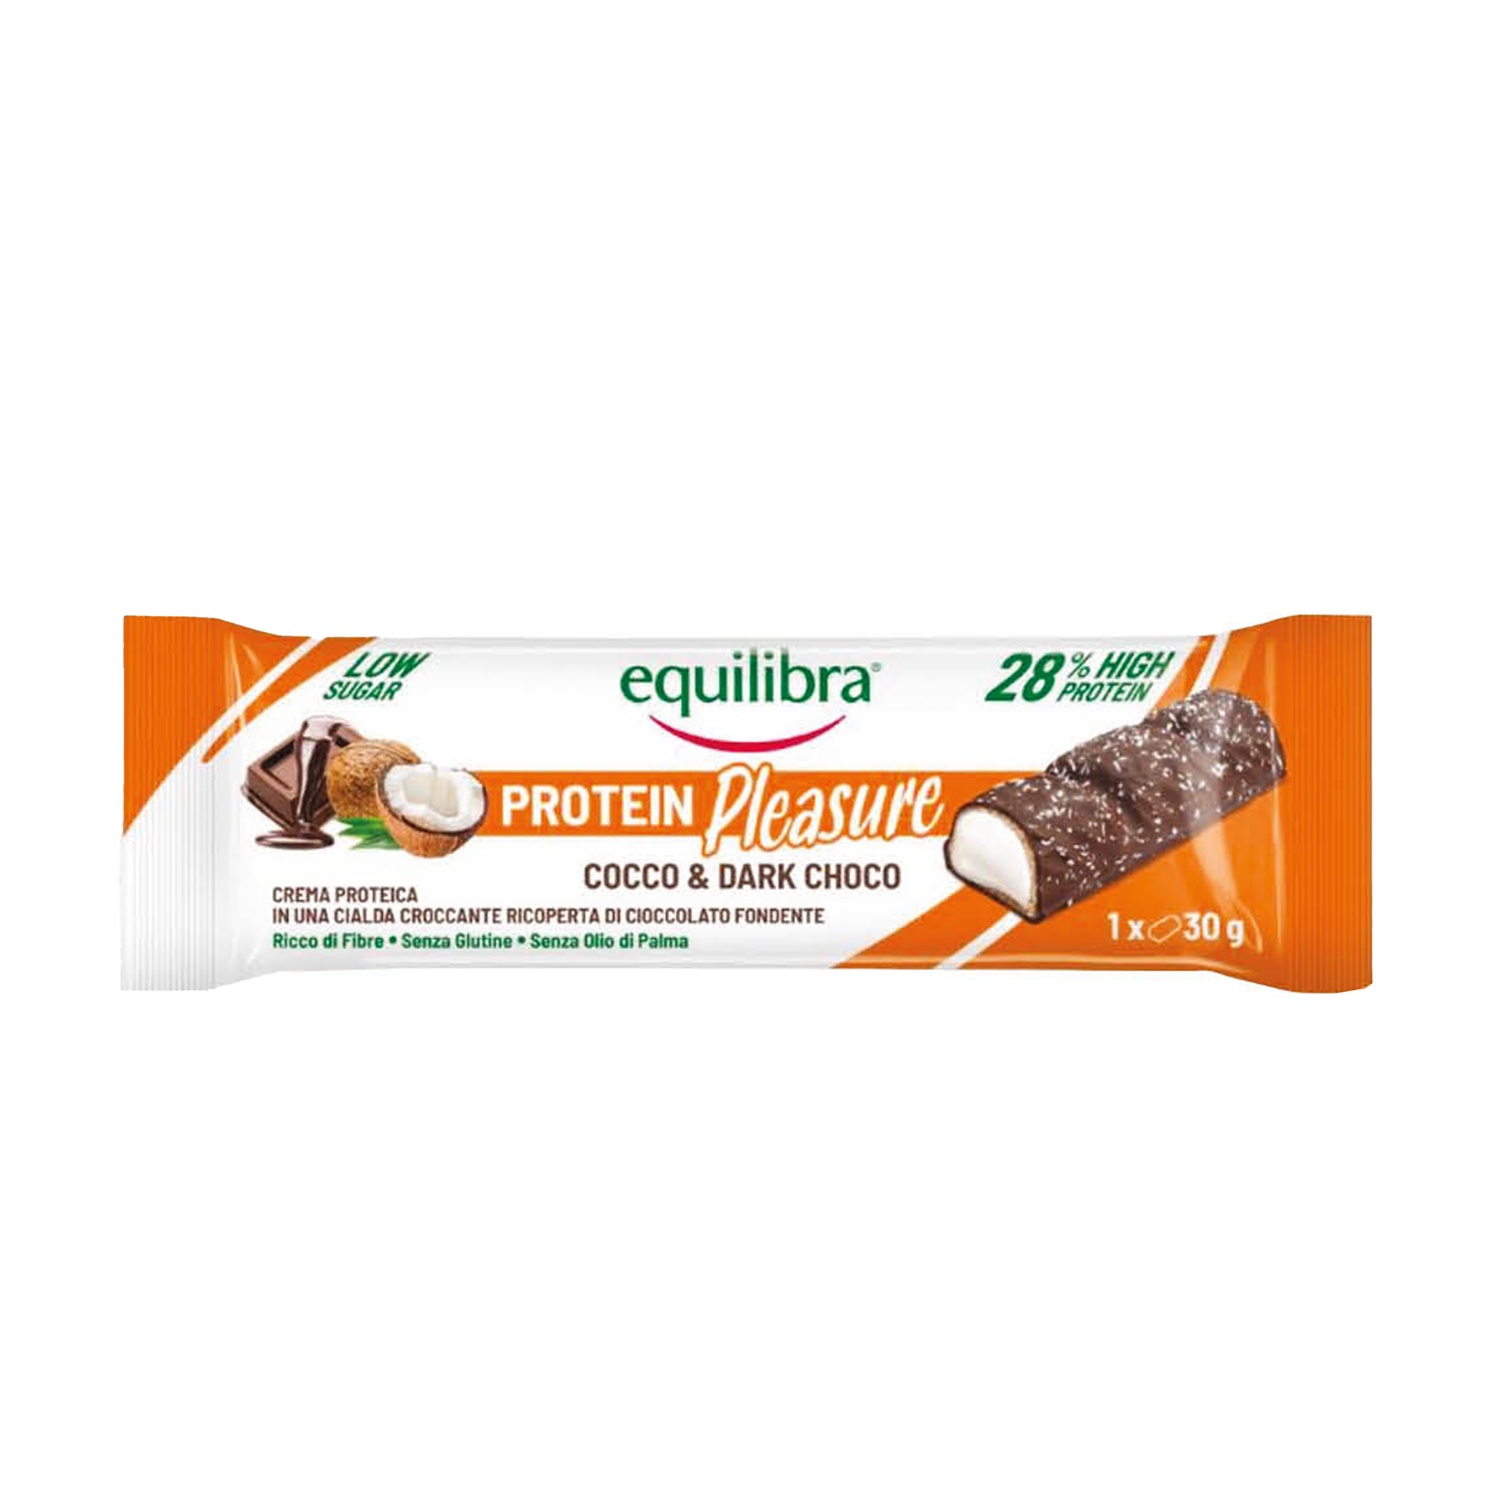 EQUILIBRA Protein Pleasure cocco e cioccolato fondente